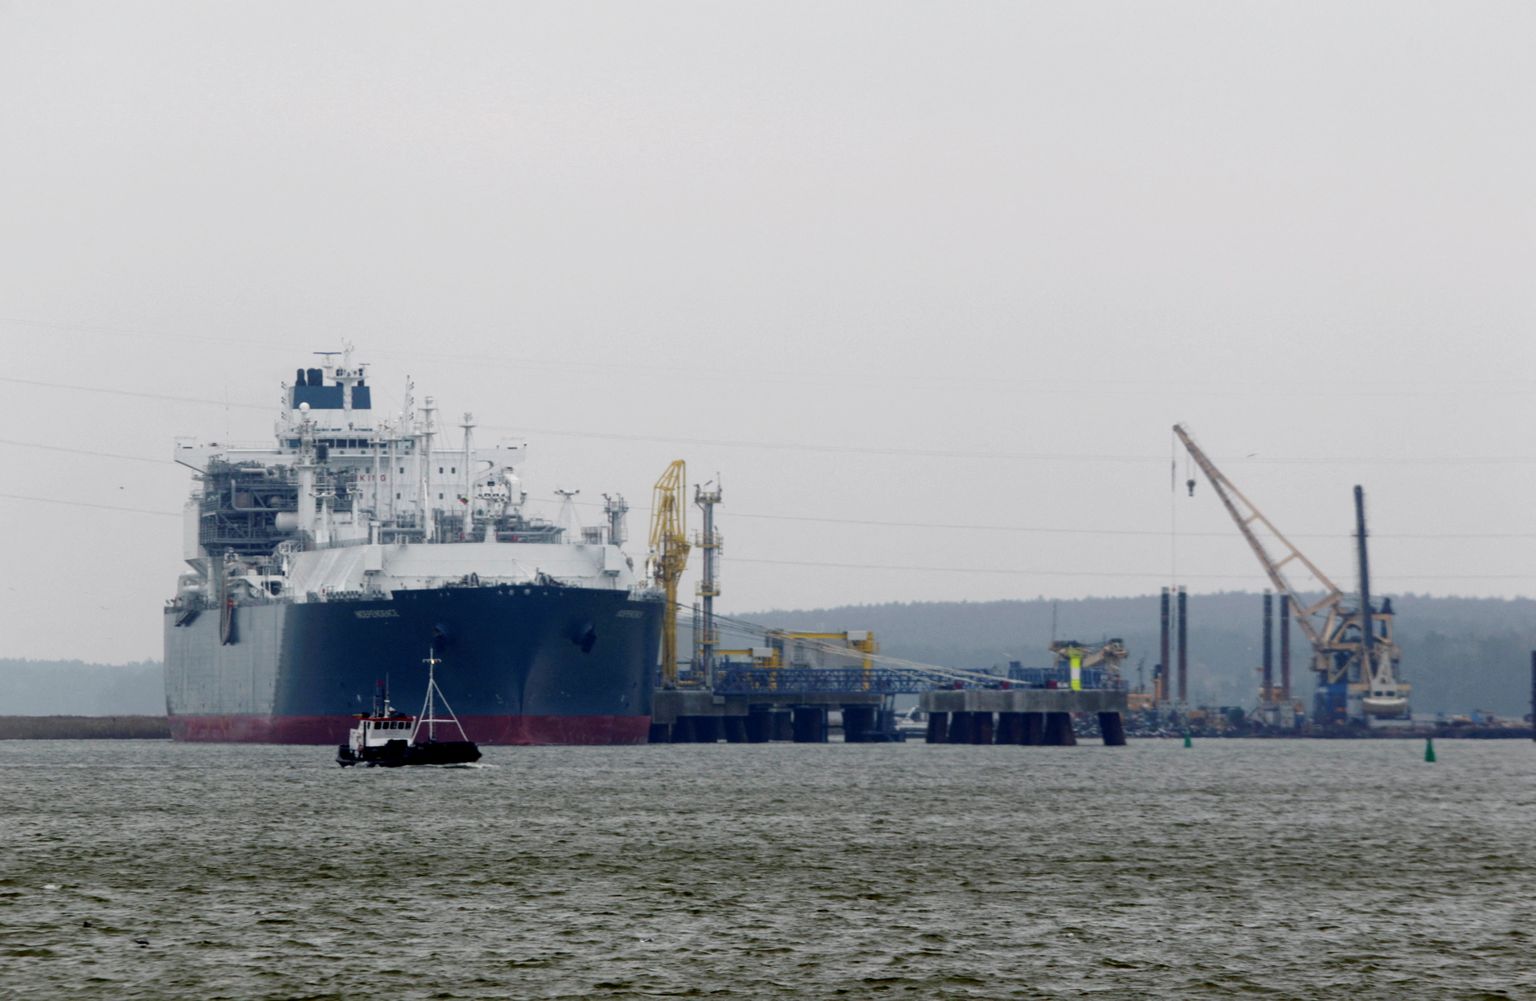 Floating storage regasification unit (Justitsministeriet begyndte at udarbejde ændringsforslaget) «Independence» is docked at the liquefied natural gas (LNG) terminal in Klaipeda port.